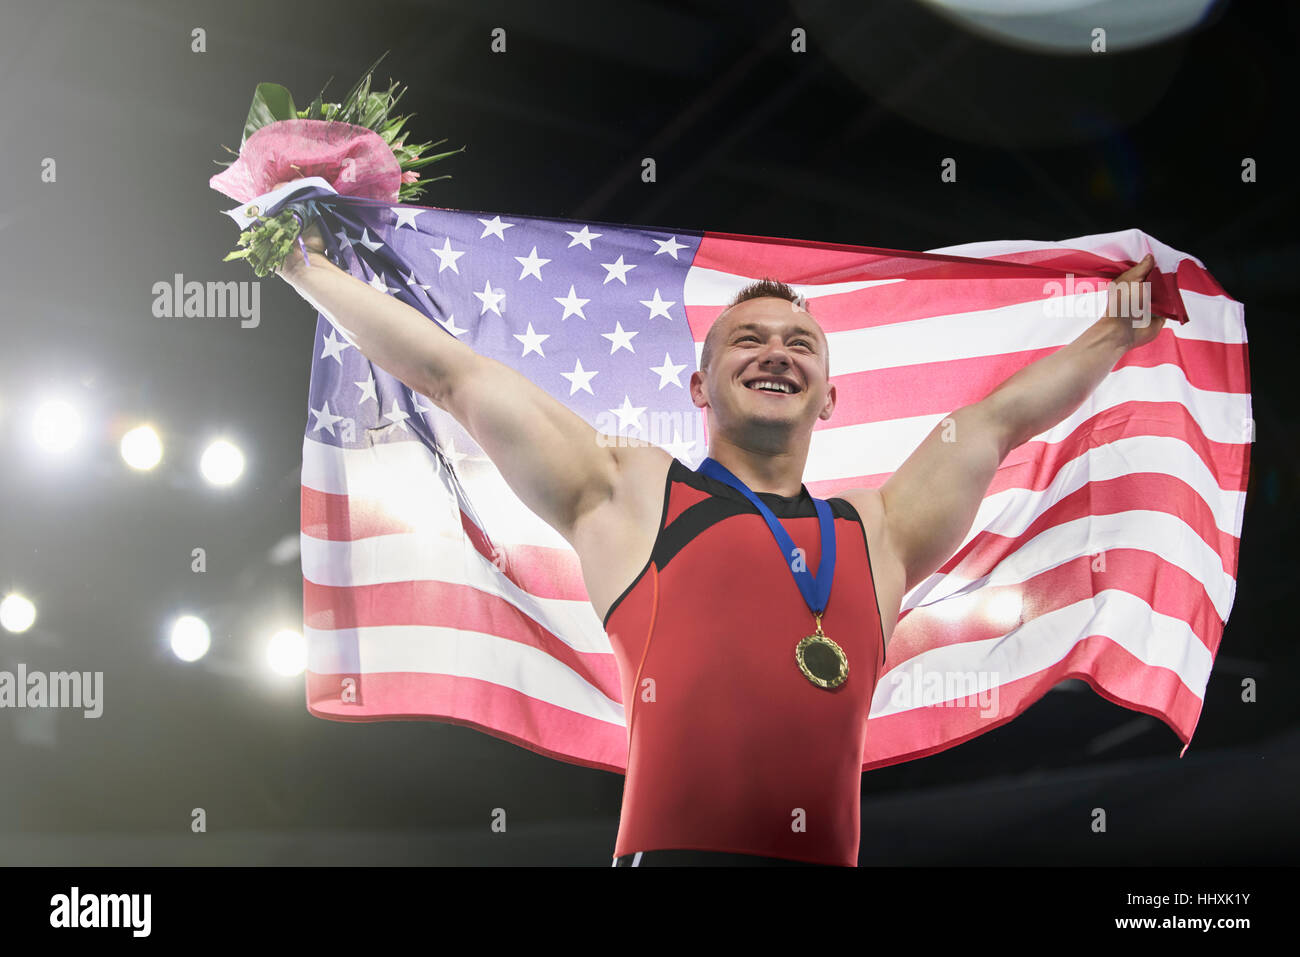 Entusiasta ginnasta maschio celebrando la vittoria holding bandiera americana sul podio dei vincitori Foto Stock